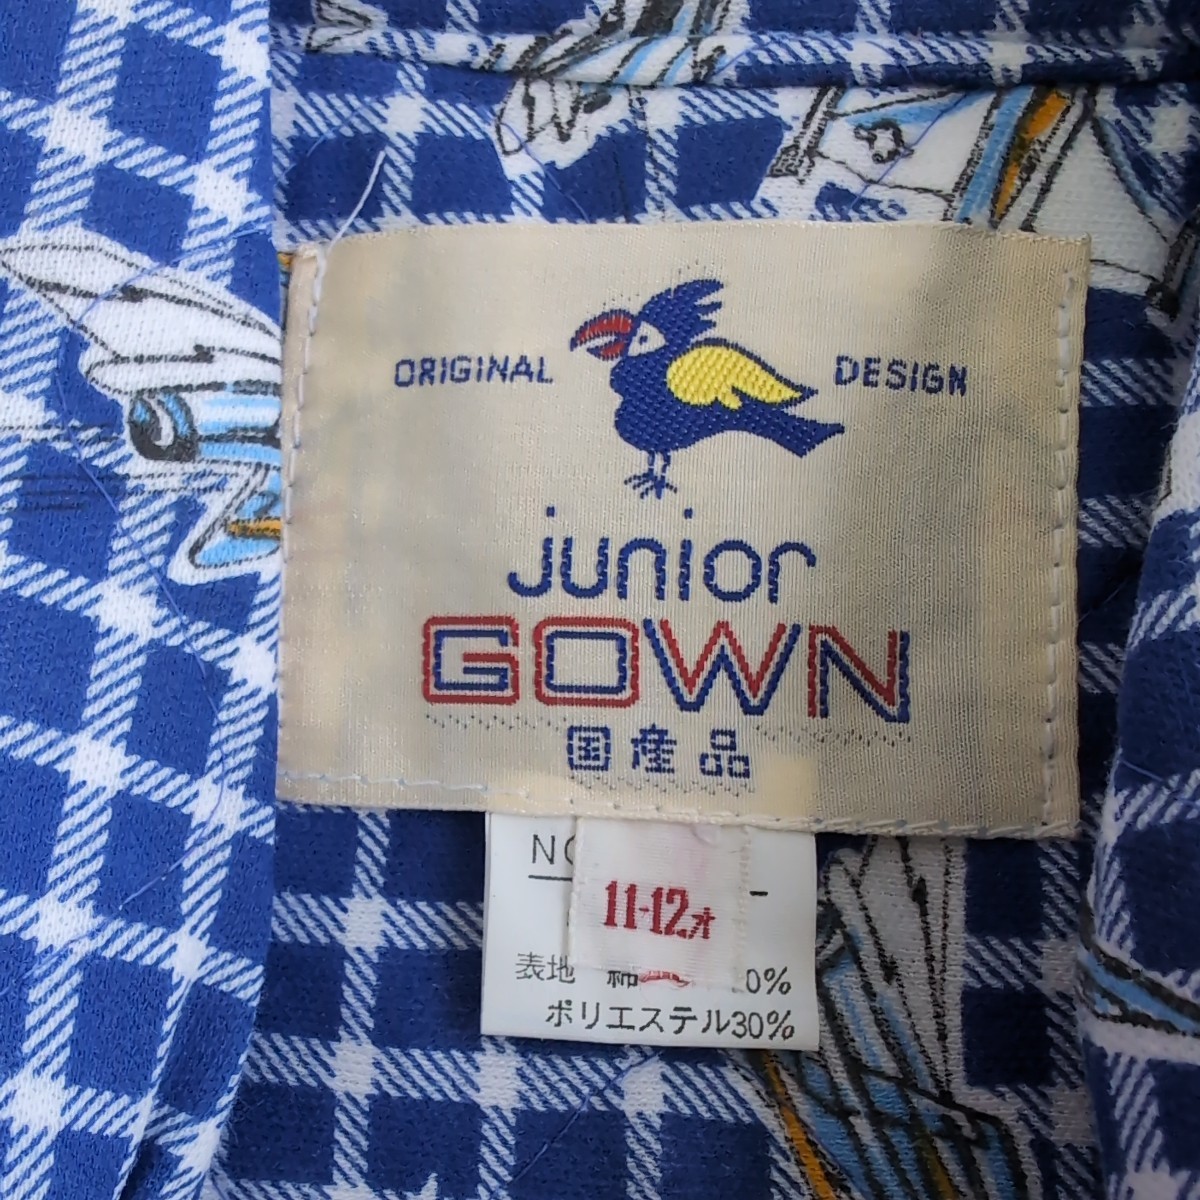  не использовался товар подлинная вещь Junior размер. свободная домашняя одежда мужчина предназначенный 11-12 лет стеганое полотно голубой проверка ... ослабленное крепление рисунок сделано в Японии ... пижама Kids 